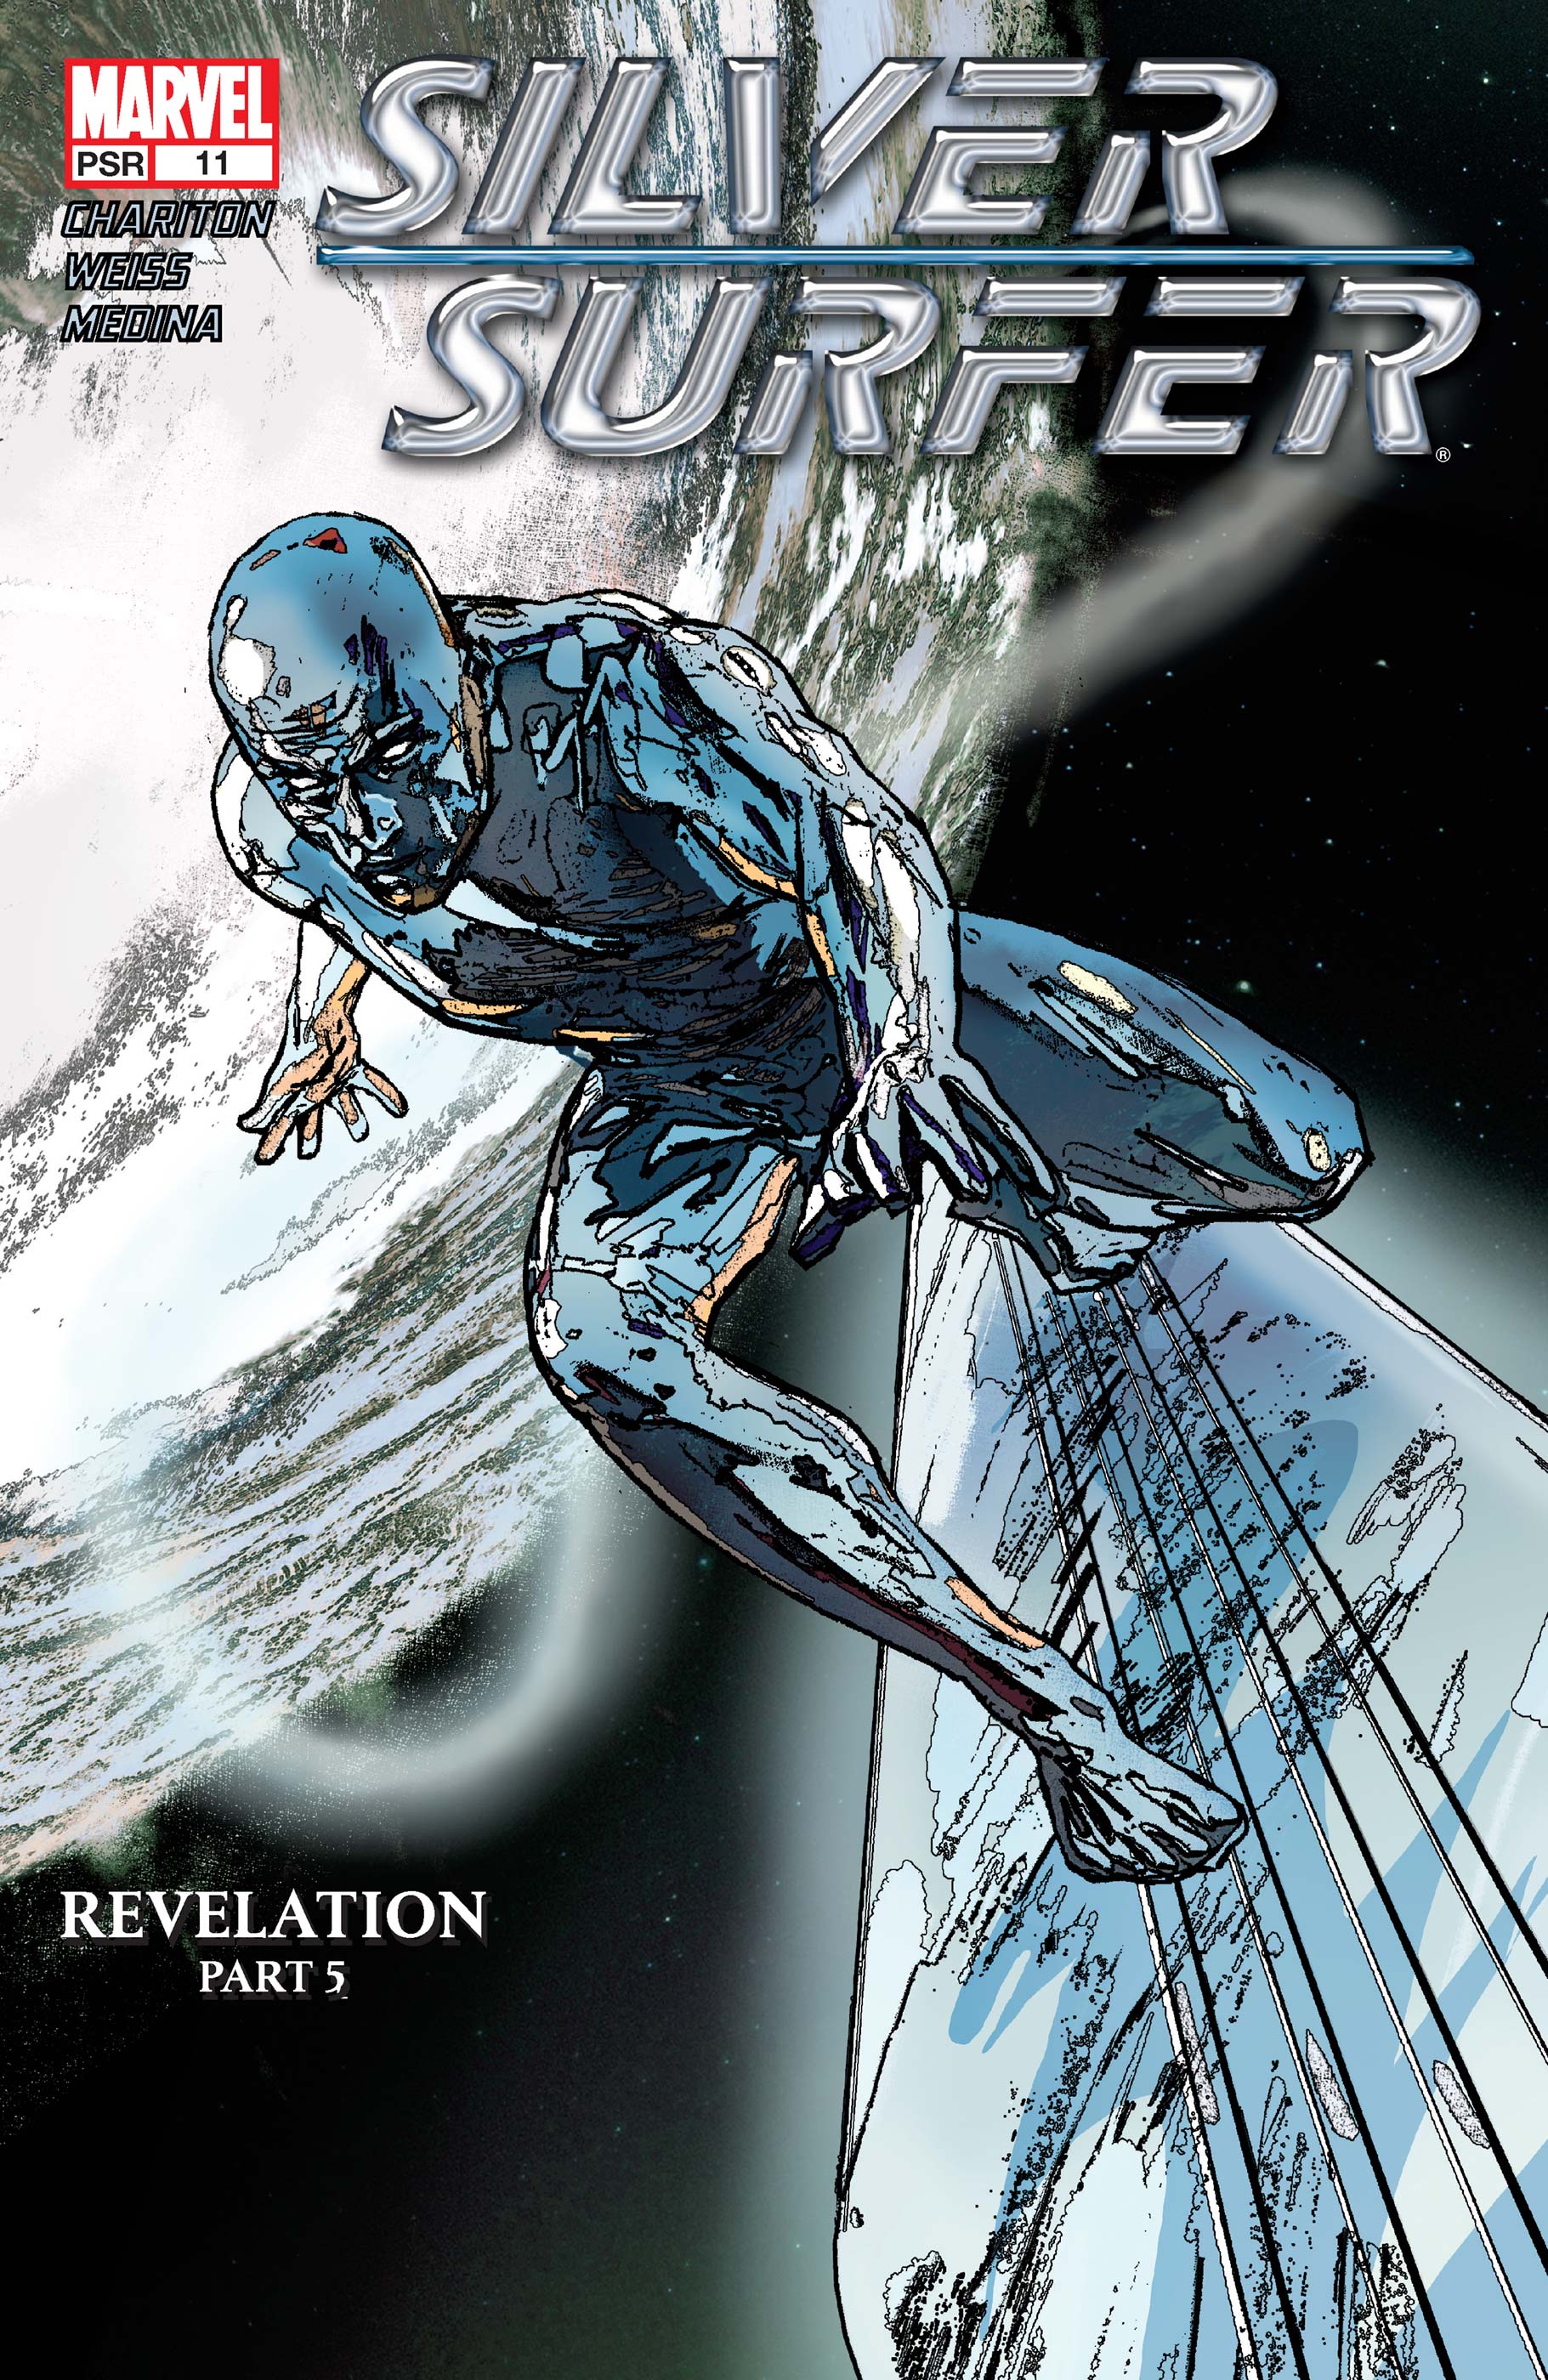 2 Reprints 7 8 9 10 11 12 13 Marvel Masterwork Comics TPB New Silver Surfer Vol